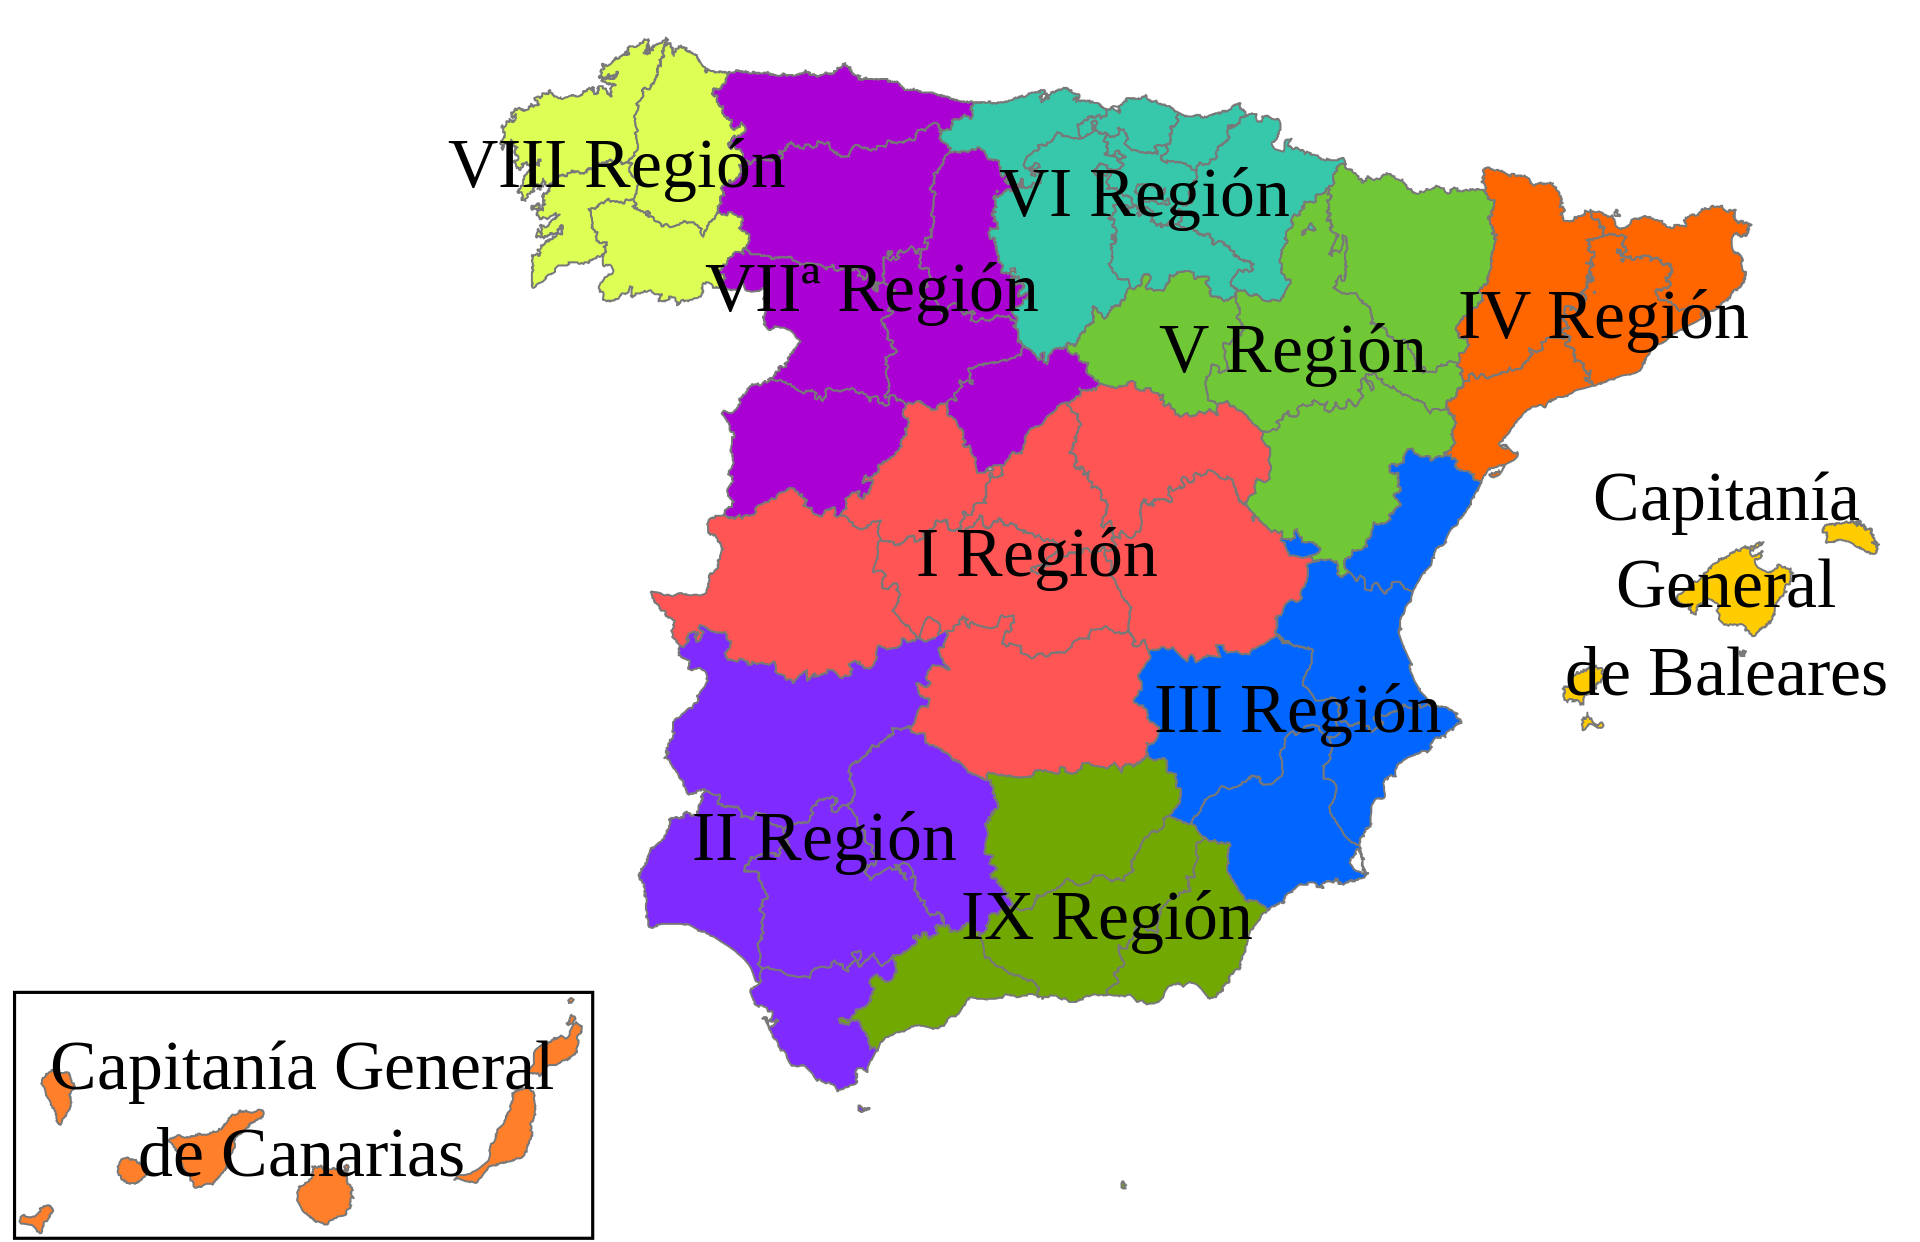 Regiones militares de España entre 1960 y 1984. Autor: Galdius, 2012. Fuente: Wikimedia Commons (CC BY-SA 4.0.)